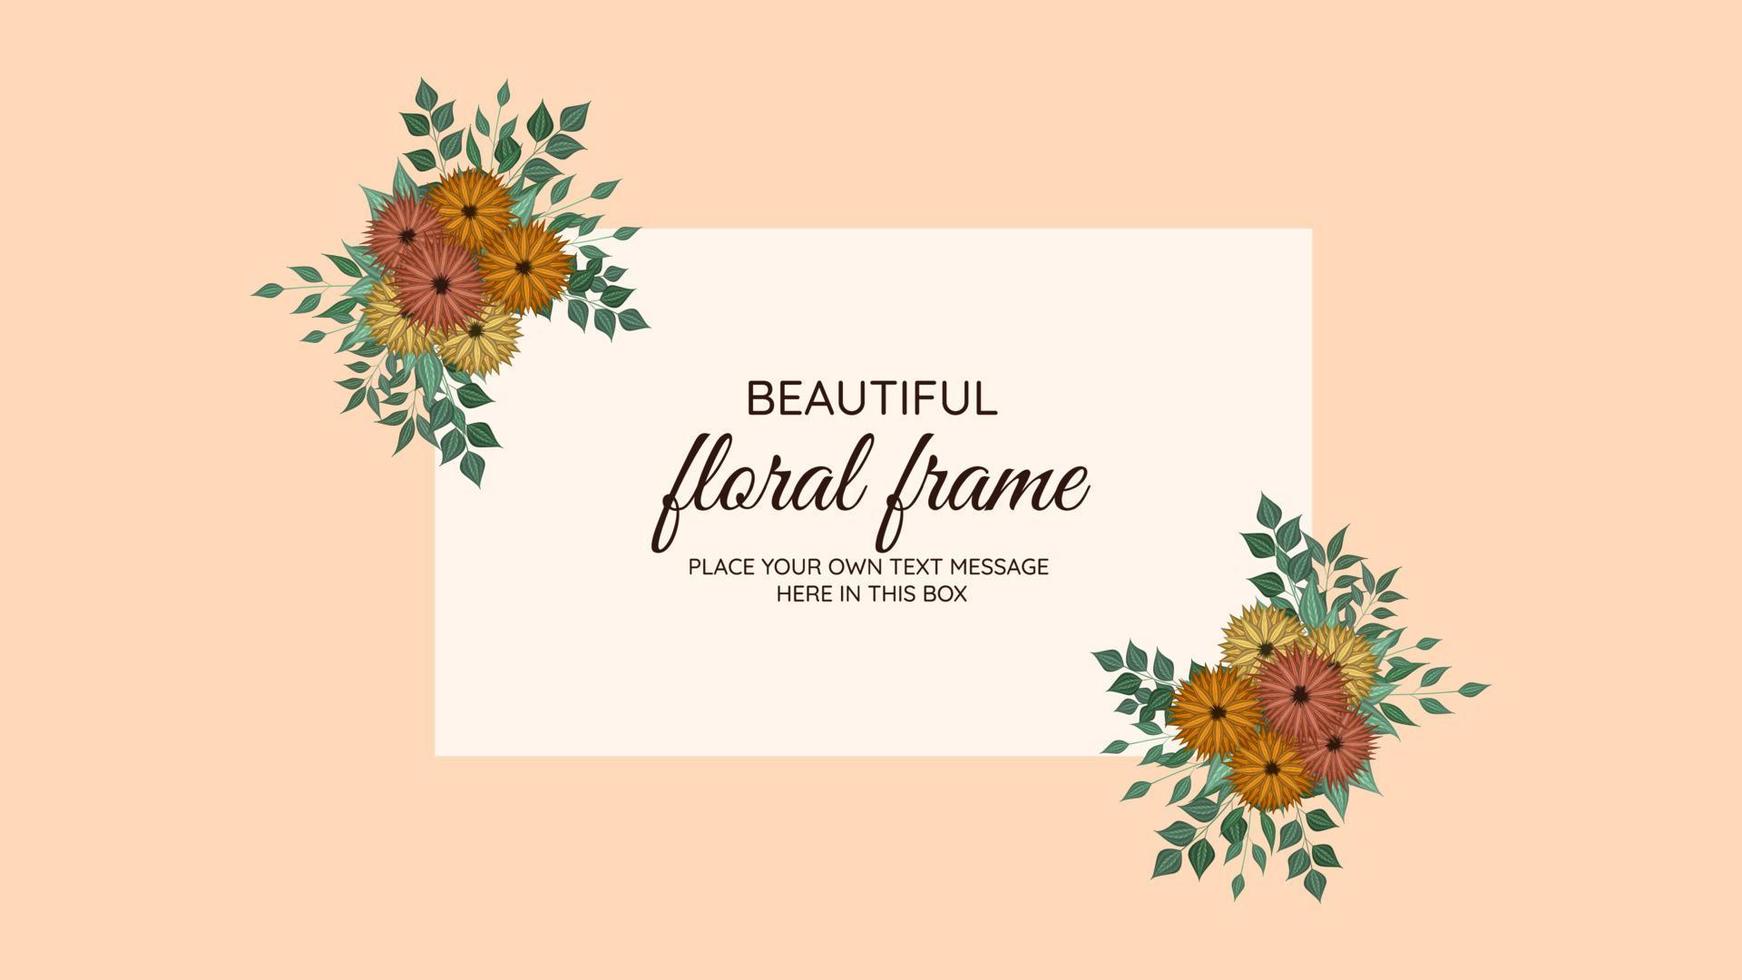 tekst bloem banner achtergrond bloemen flyer 8 maart, vrouwendag frame vector